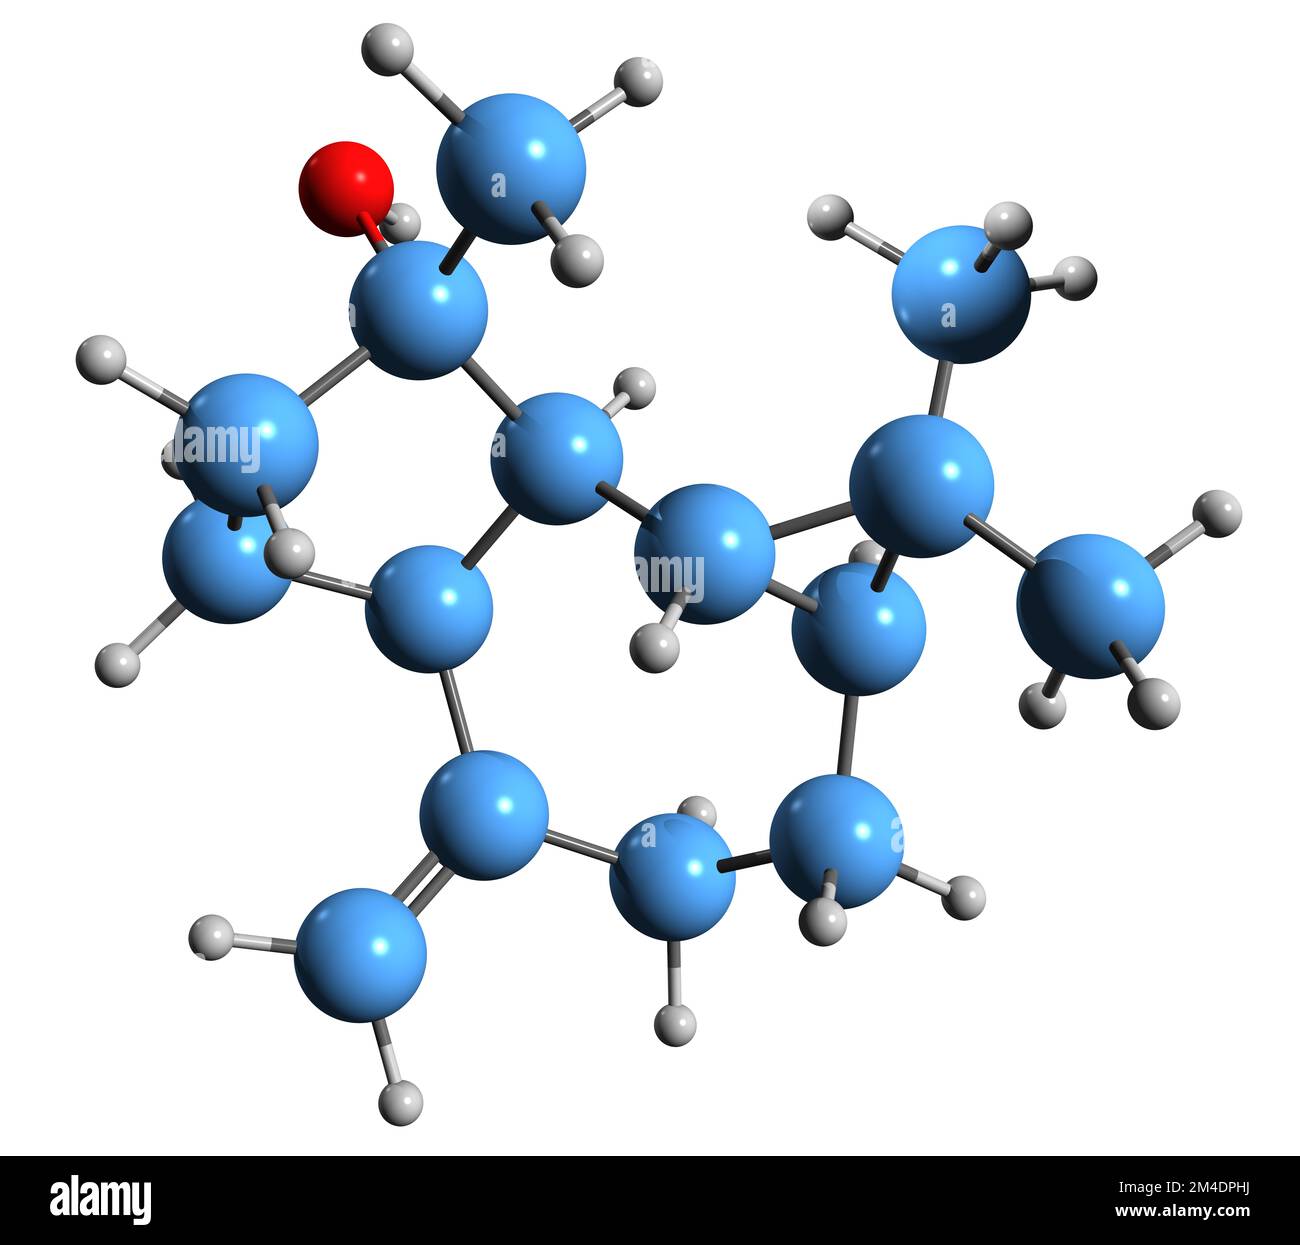 3D-Bild der Spathulenol-Skelettformel - molekularchemische Struktur von trizyklischem Sesquiterpenalkohol isoliert auf weißem Hintergrund Stockfoto